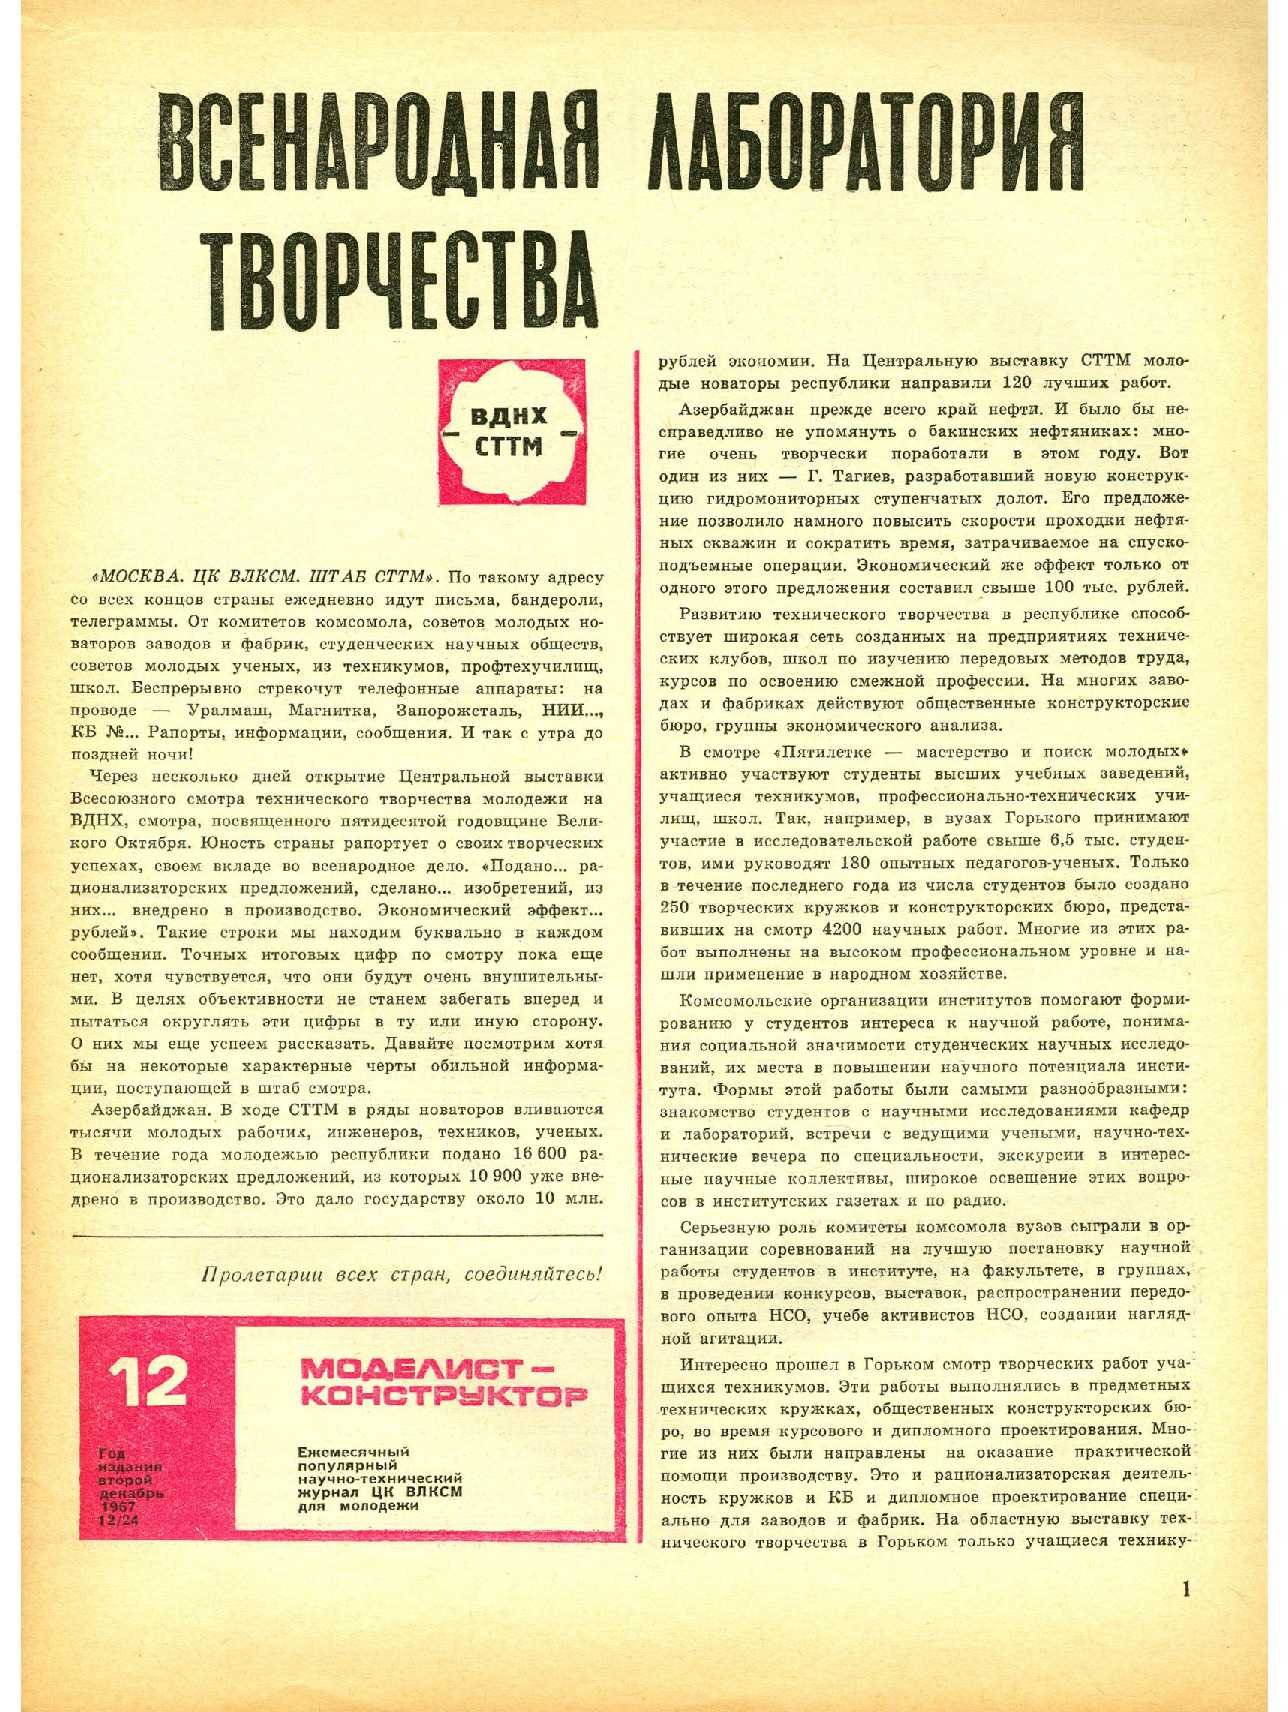 МК 12, 1967, 1 c.